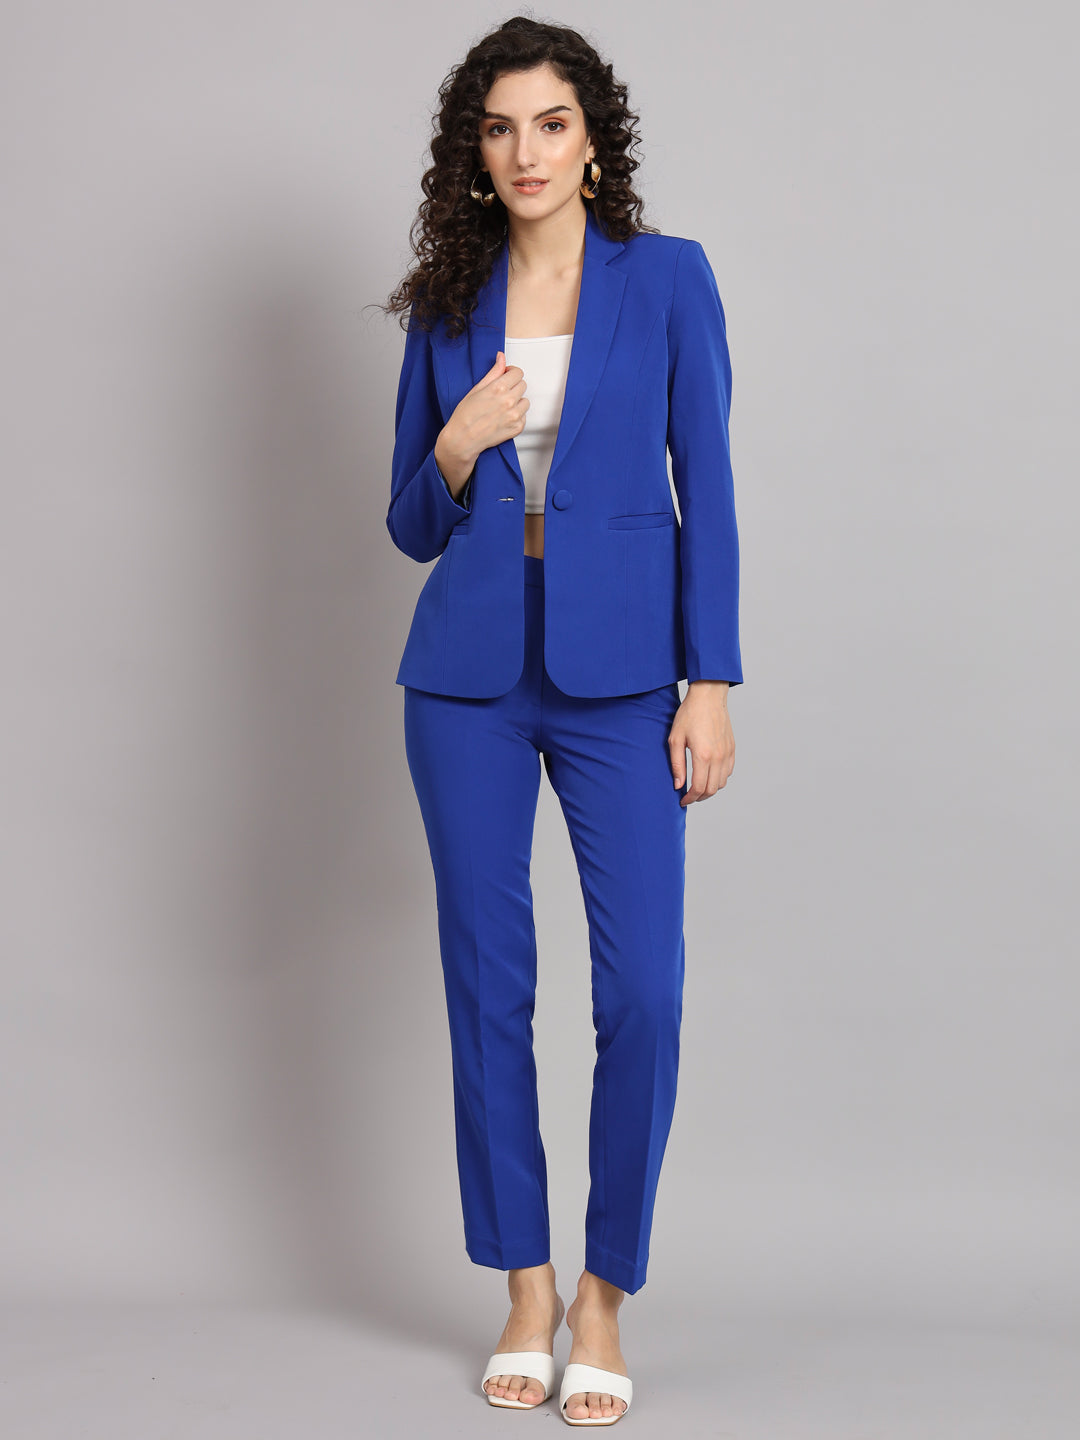 Buy Ladies Trouser Suit Online In India -  India